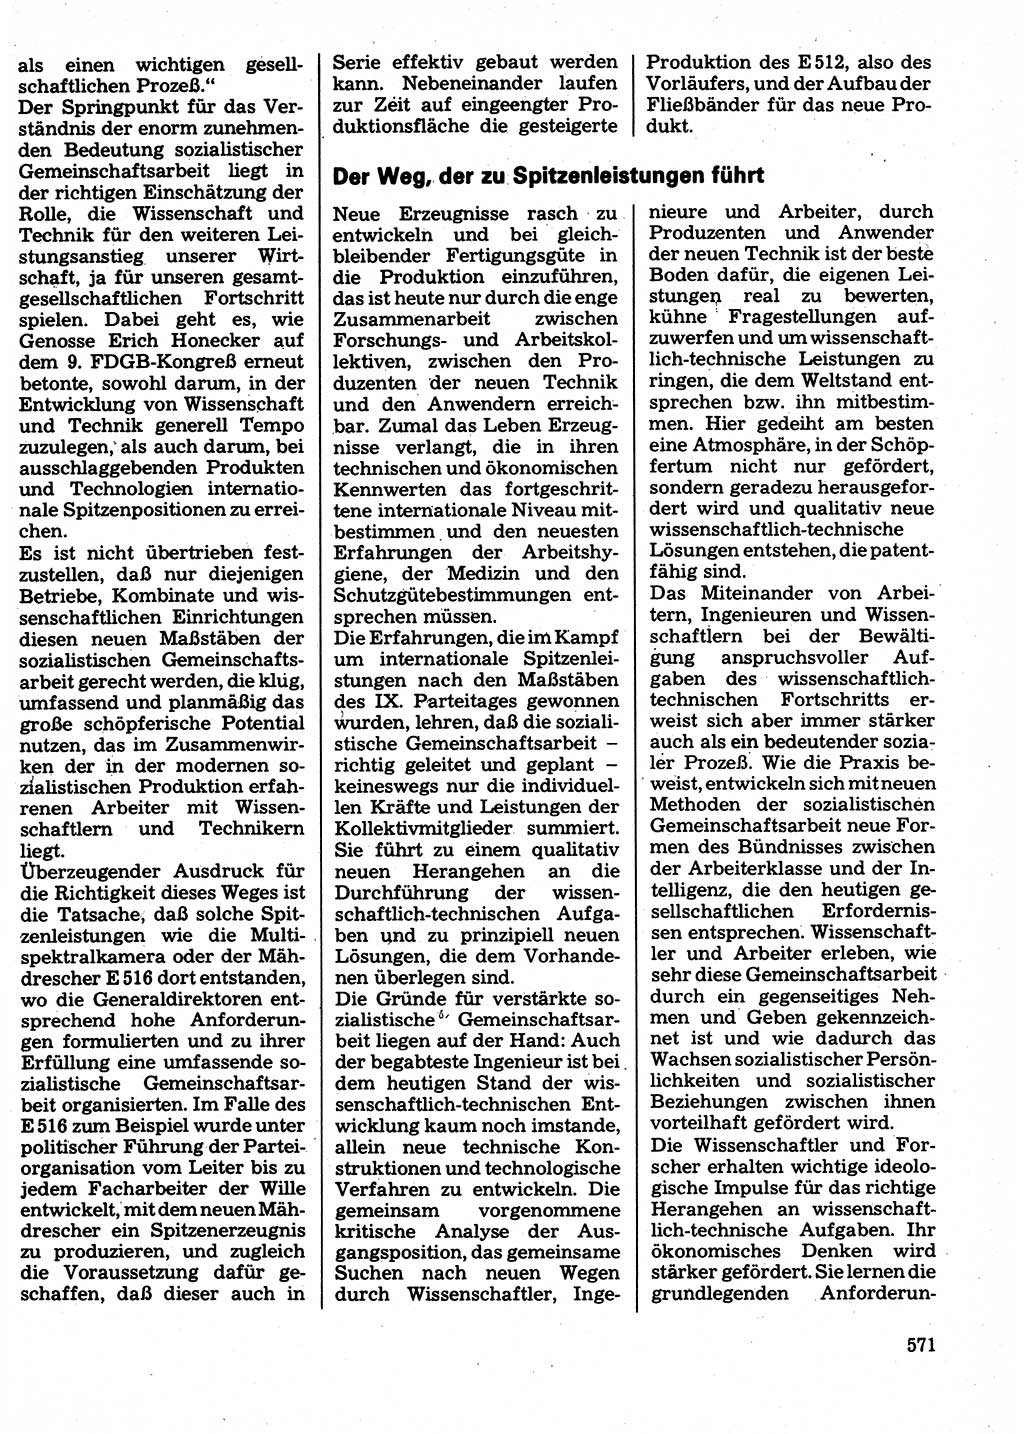 Neuer Weg (NW), Organ des Zentralkomitees (ZK) der SED (Sozialistische Einheitspartei Deutschlands) für Fragen des Parteilebens, 32. Jahrgang [Deutsche Demokratische Republik (DDR)] 1977, Seite 571 (NW ZK SED DDR 1977, S. 571)